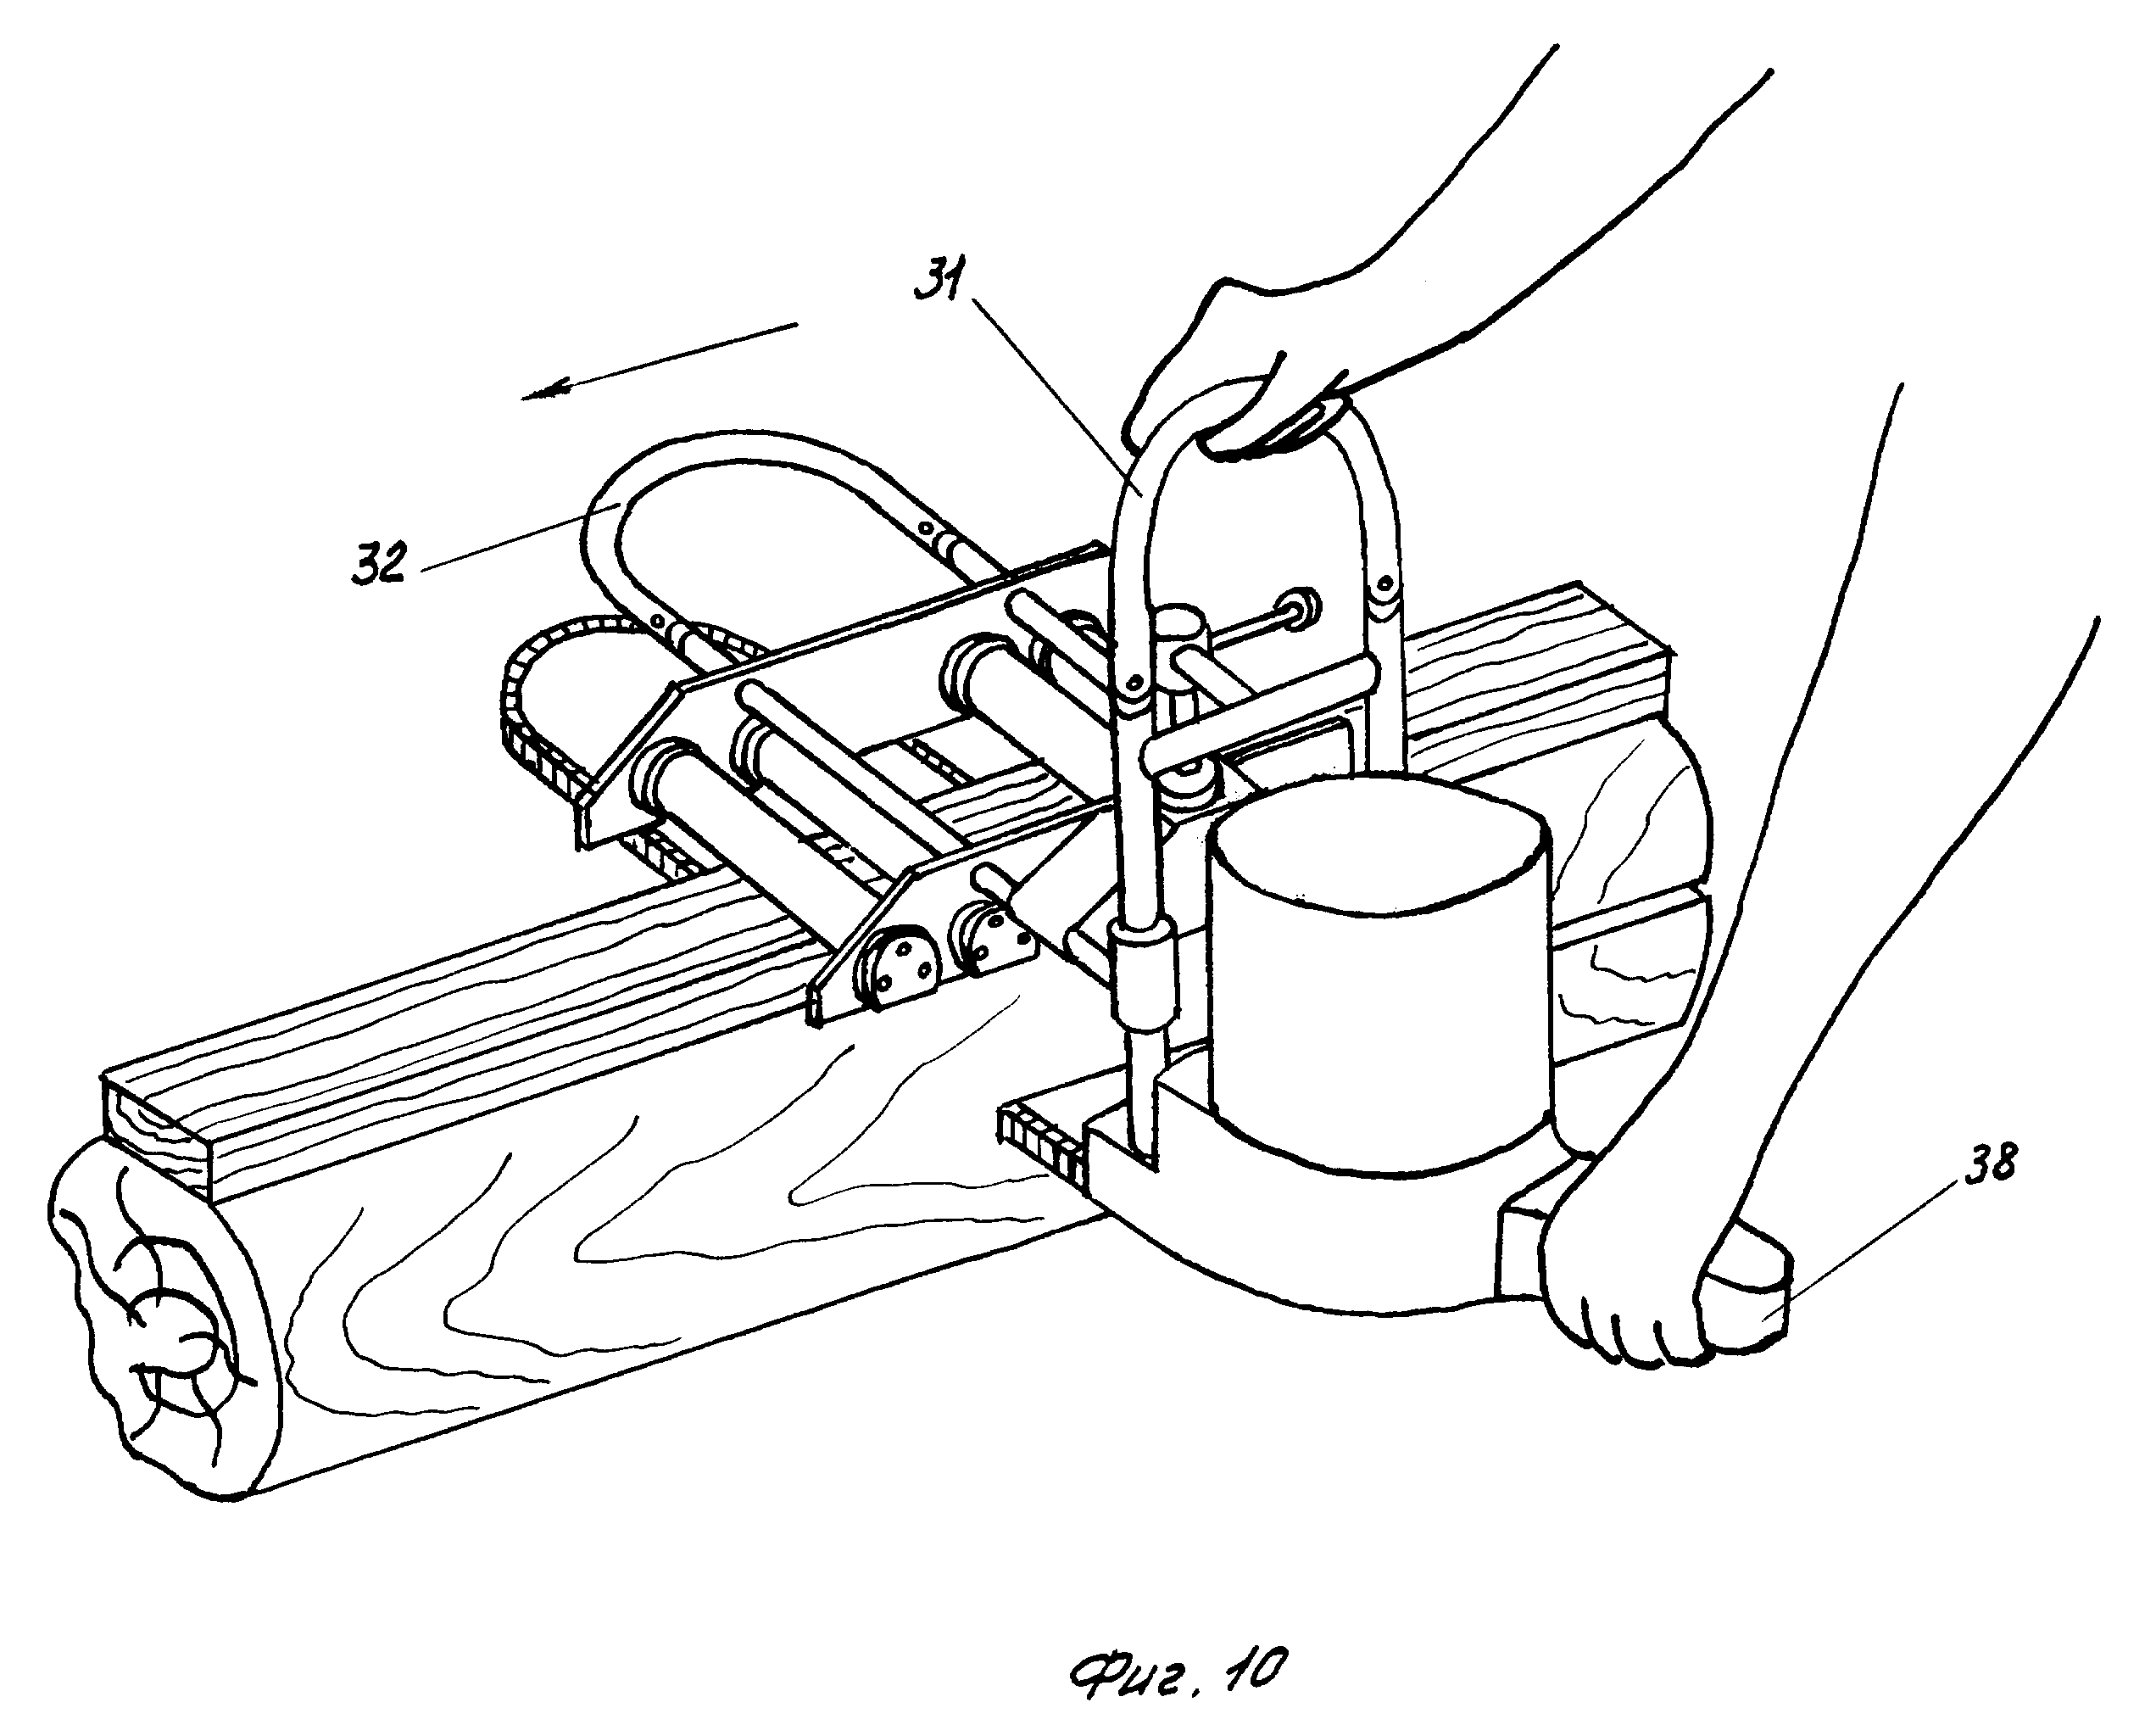 Самодельная пилорама из бензопилы - инструкция по сборке своими руками